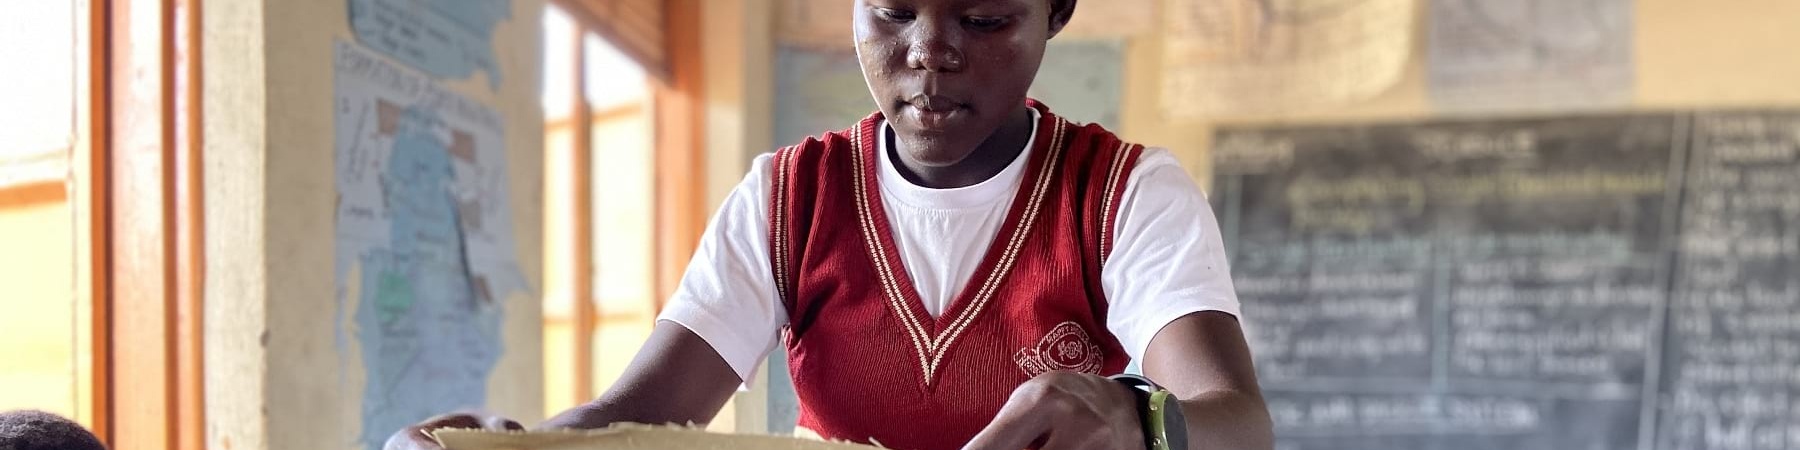 Ragazza ugandese in divisa scolastica tiene in mano slip autoprodotti.